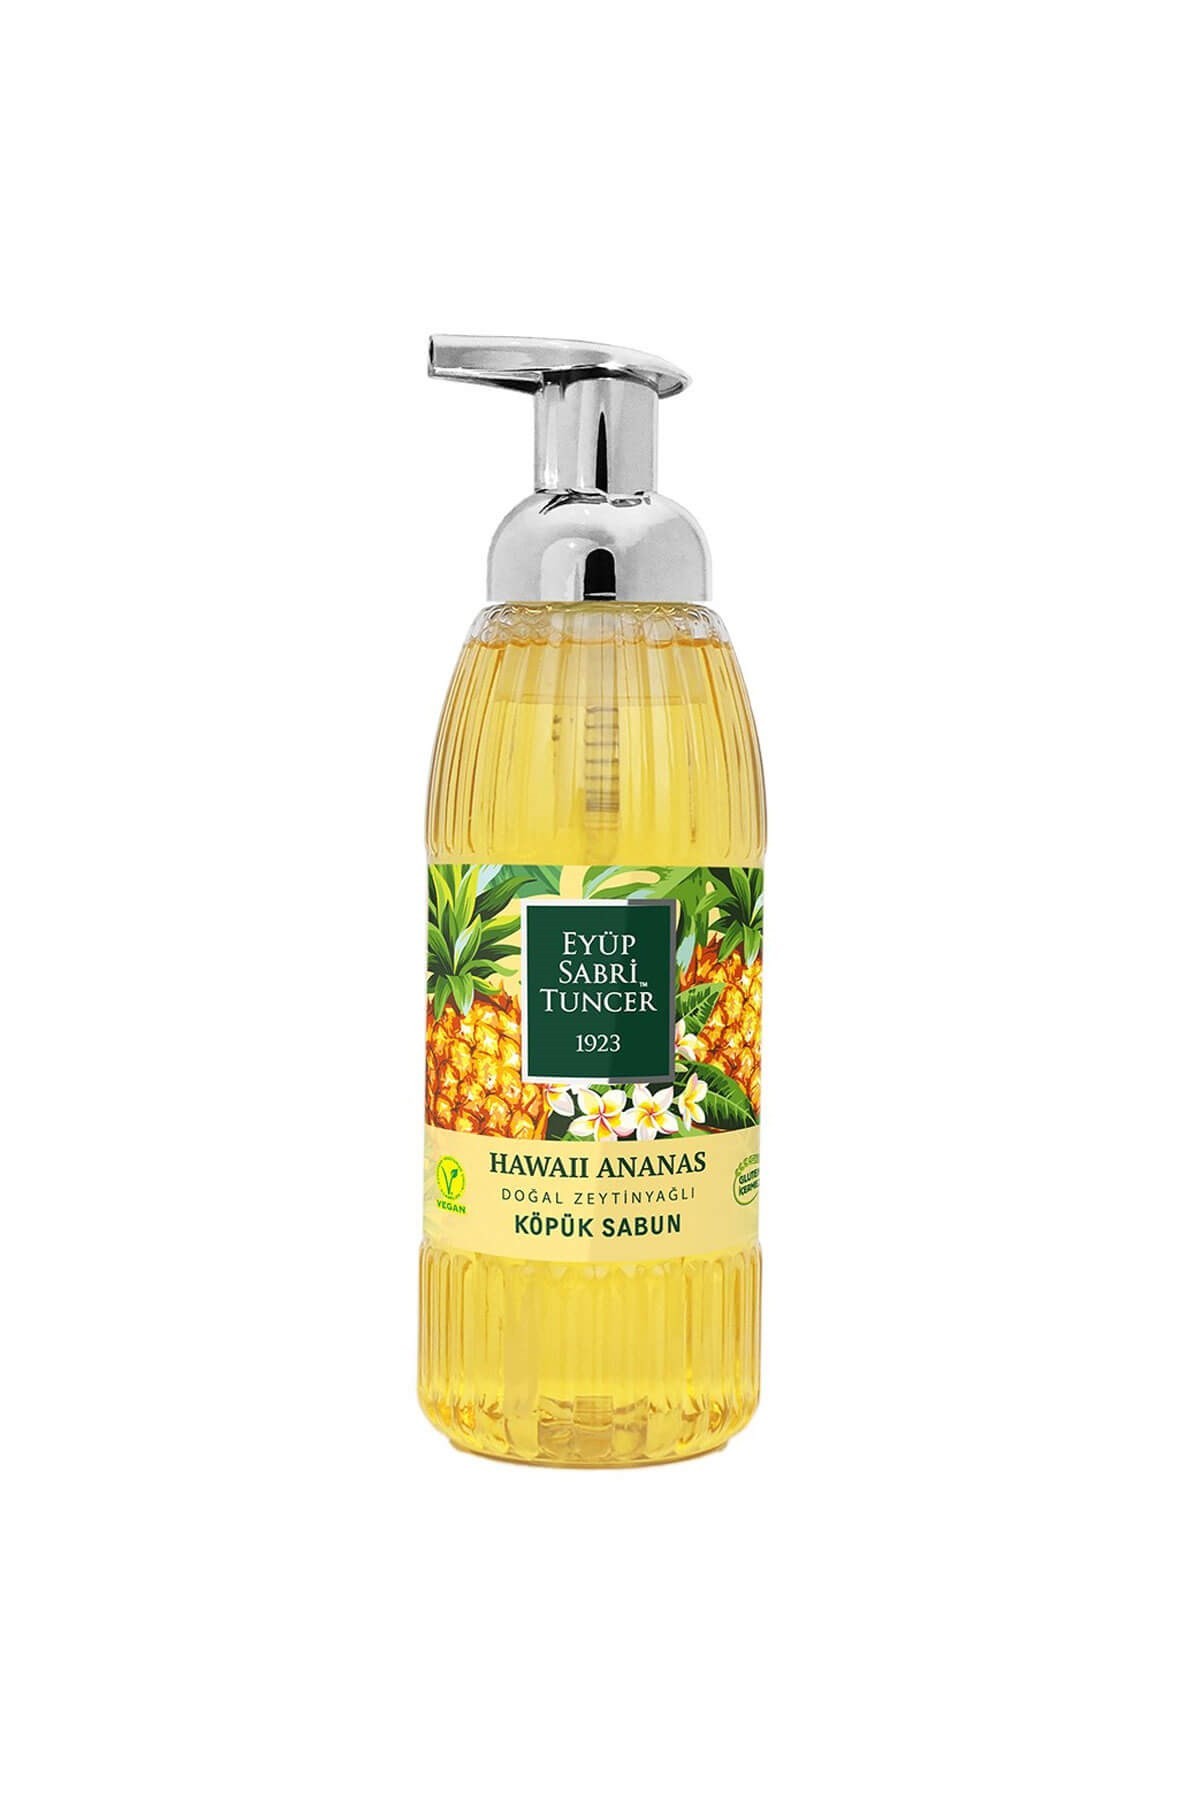 Eyüp Sabri Tuncer Hawaii Ananas Doğal Zeytinyağlı Köpük Sabun 500 ml